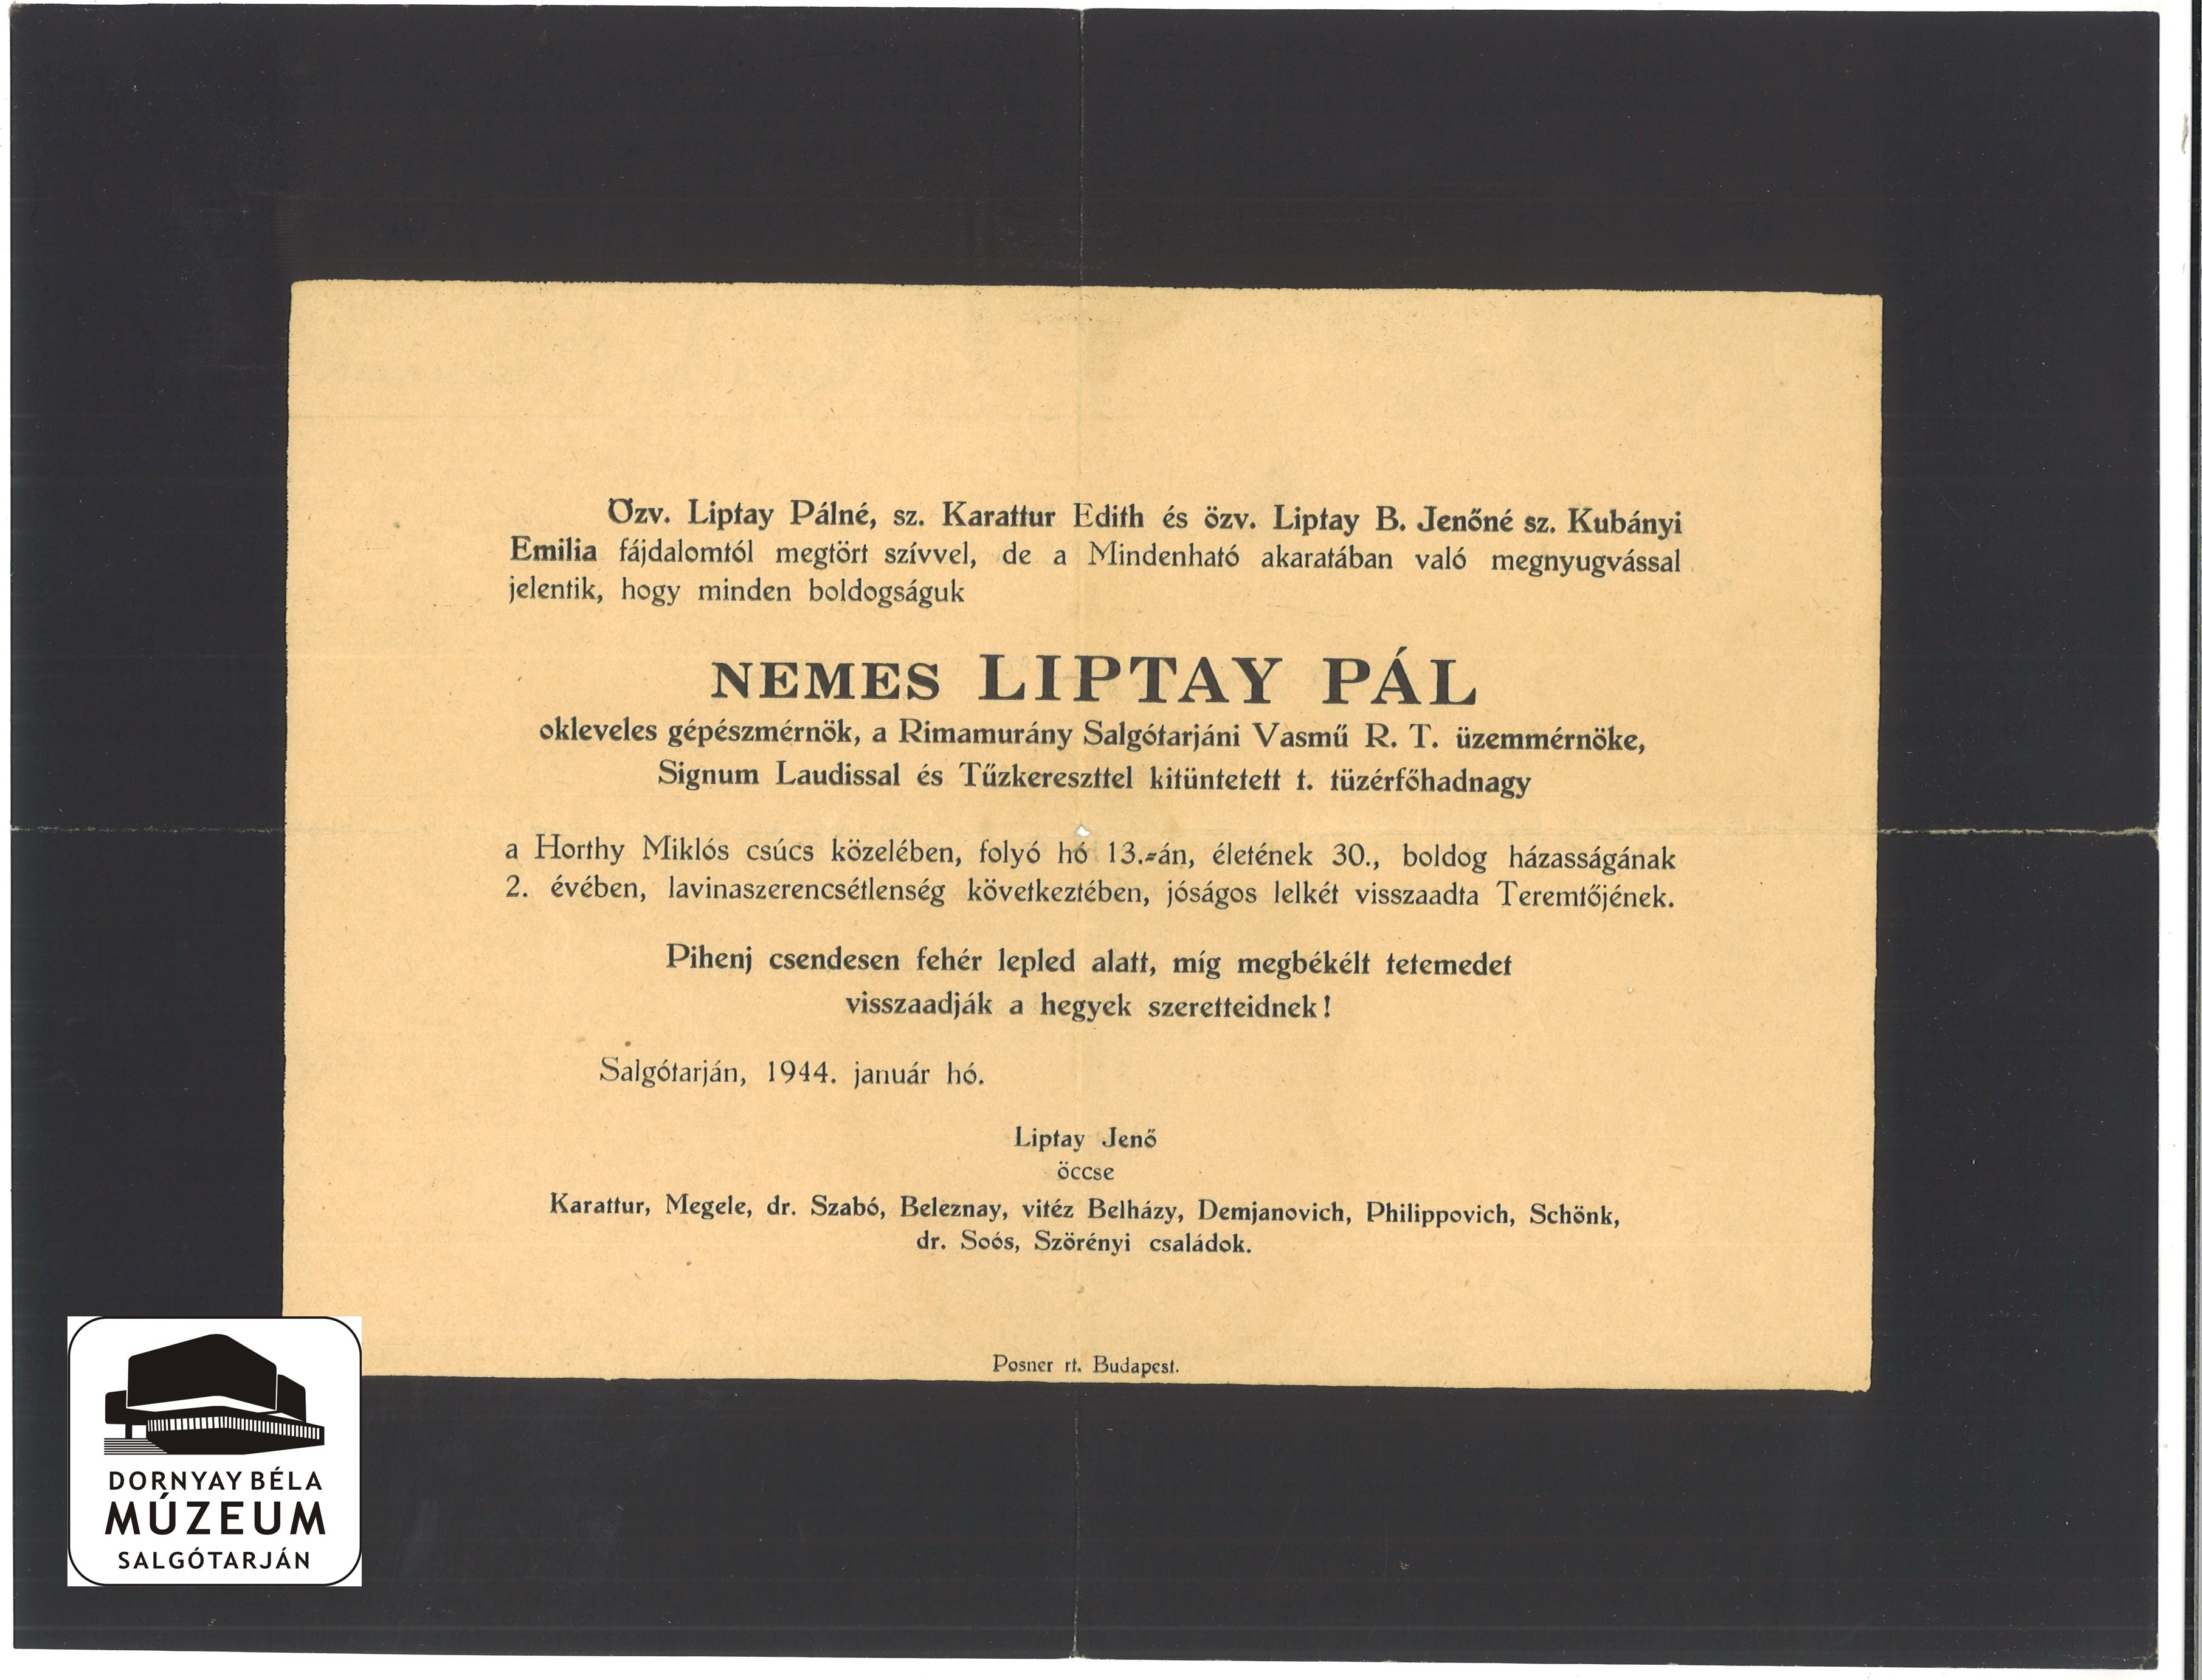 Liptay Pál gyászjelentése (Dornyay Béla Múzeum, Salgótarján CC BY-NC-SA)